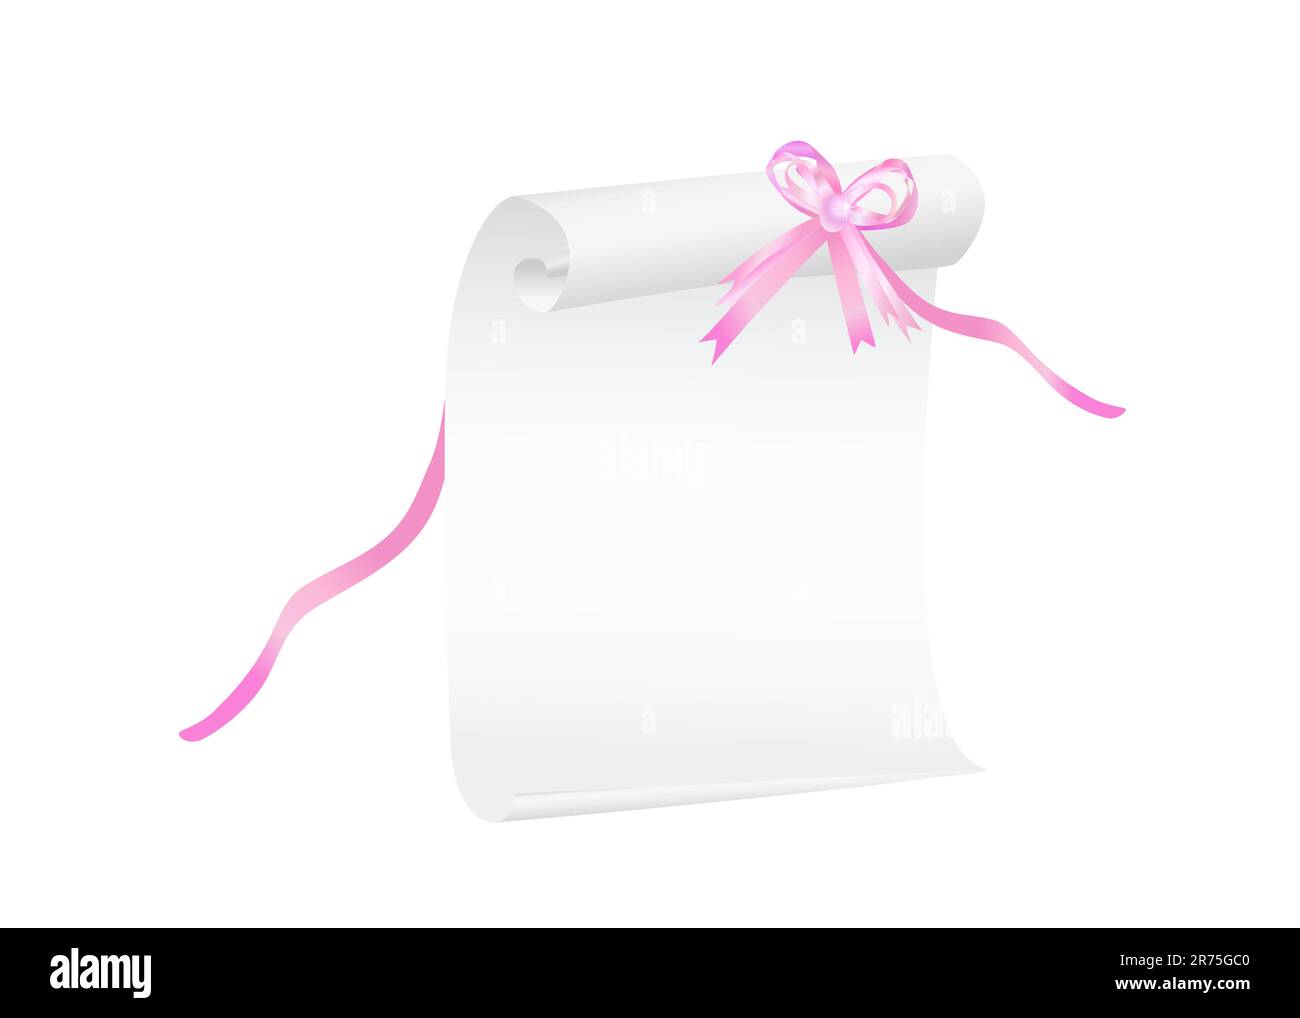 Blättern Sie durch weißes Papier mit einem rosafarbenen Band, passend für einen Hintergrund. Vektordarstellung Stock Vektor